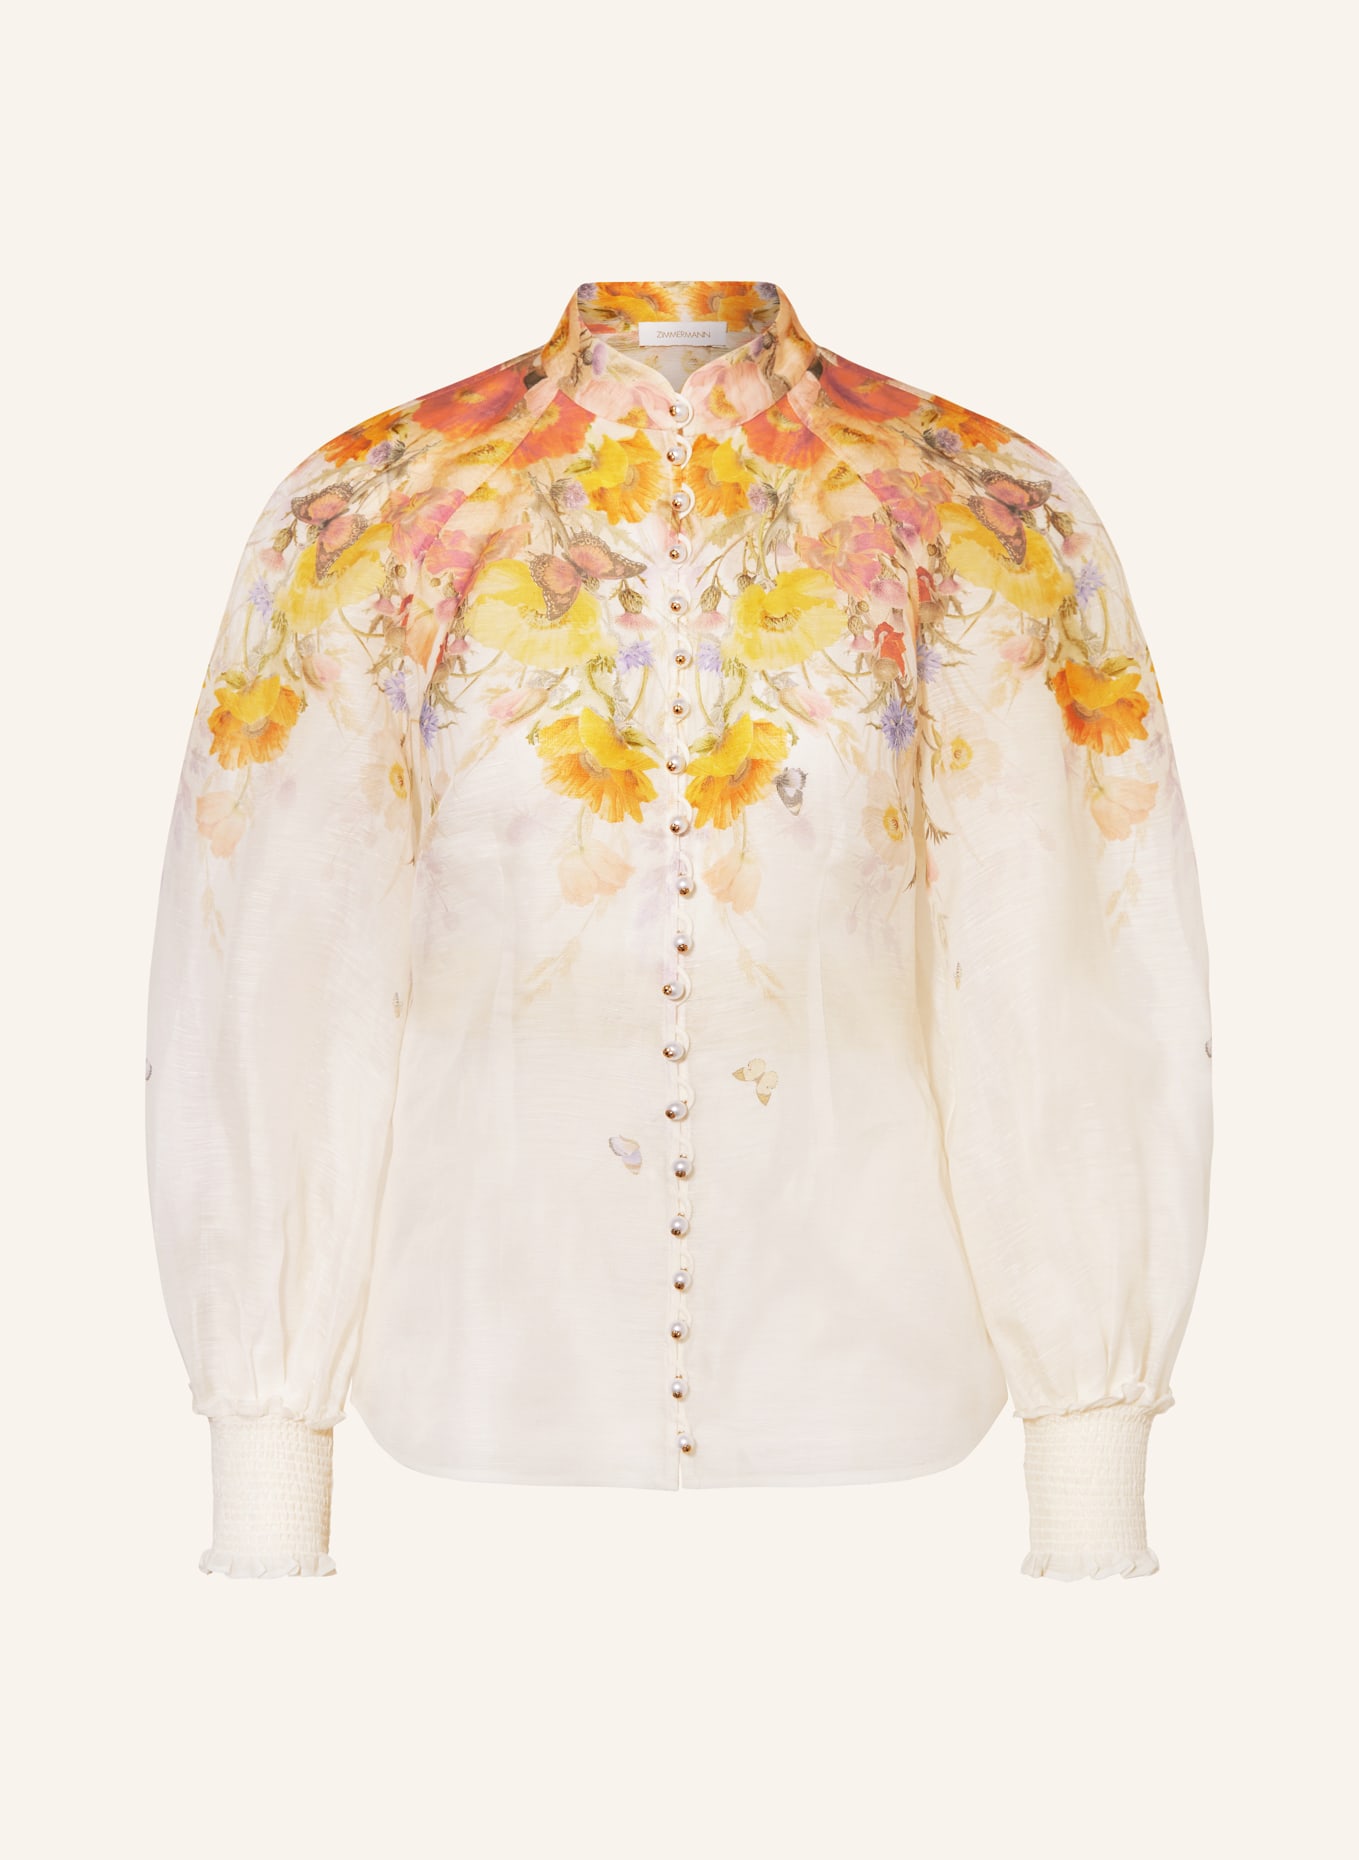 ZIMMERMANN Bluse TRANQUILLITY mit Leinen und Seide, Farbe: ROT/ DUNKELGELB/ GRÜN (Bild 1)